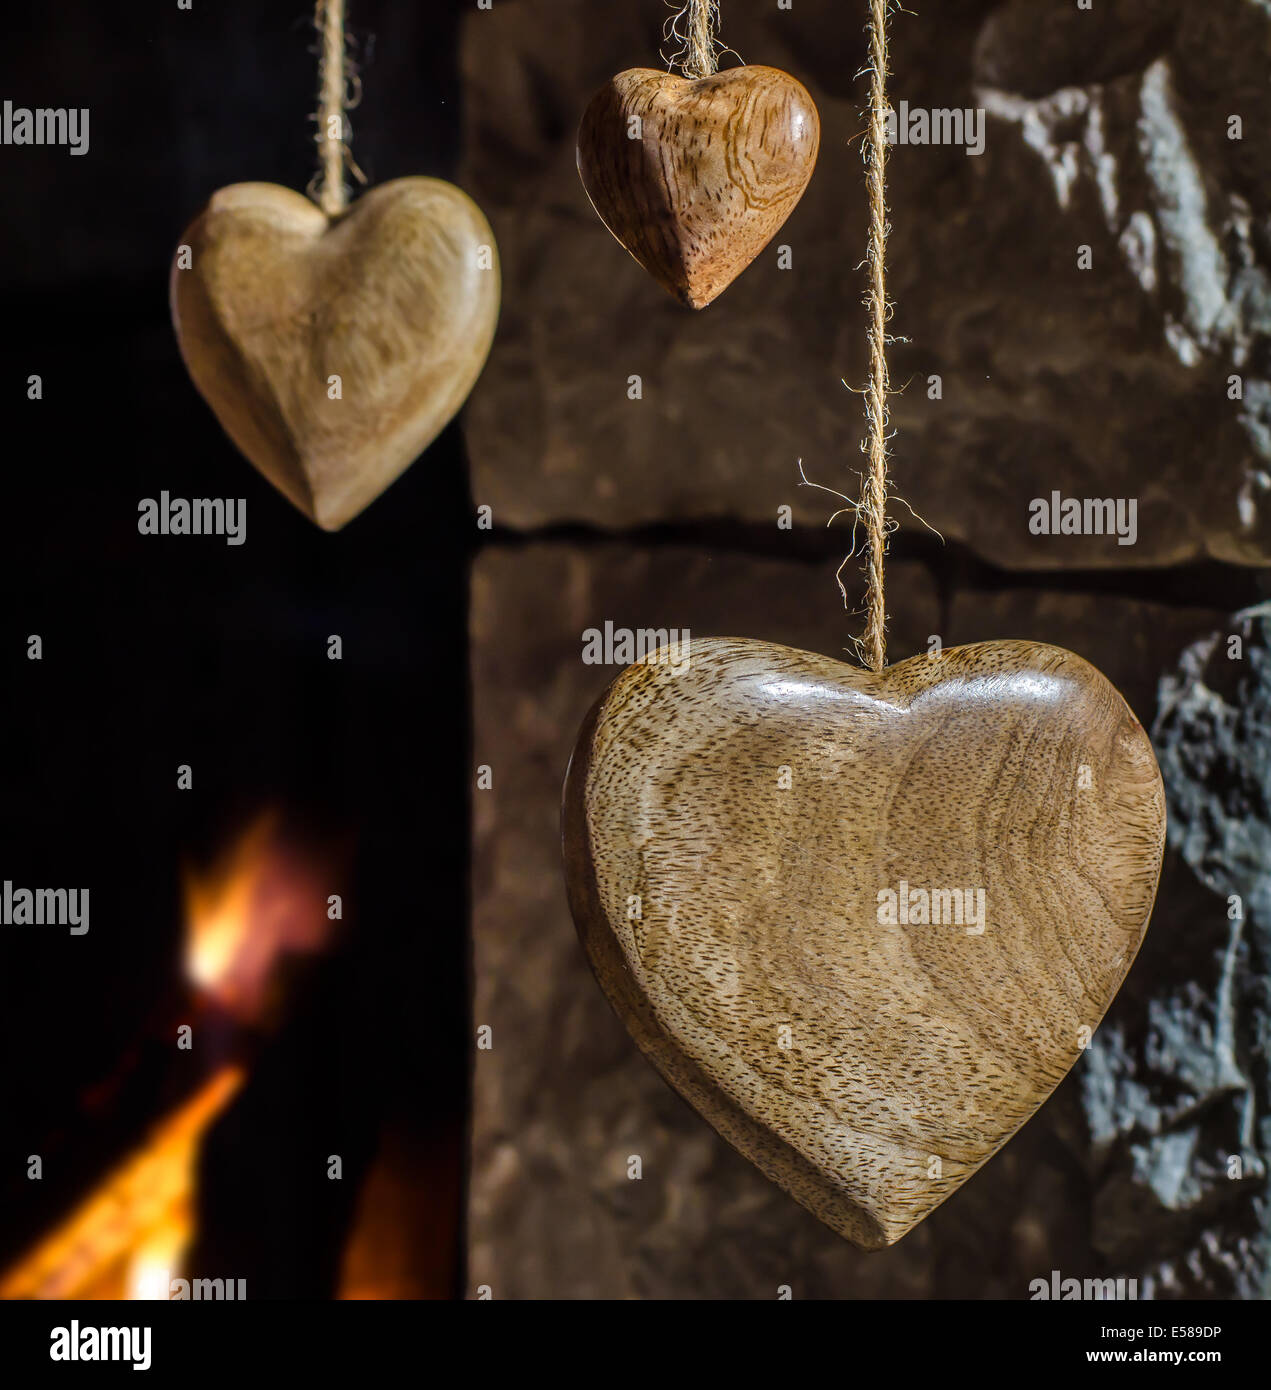 Coeurs en bois accroché contre une vieille cheminée en pierre Banque D'Images